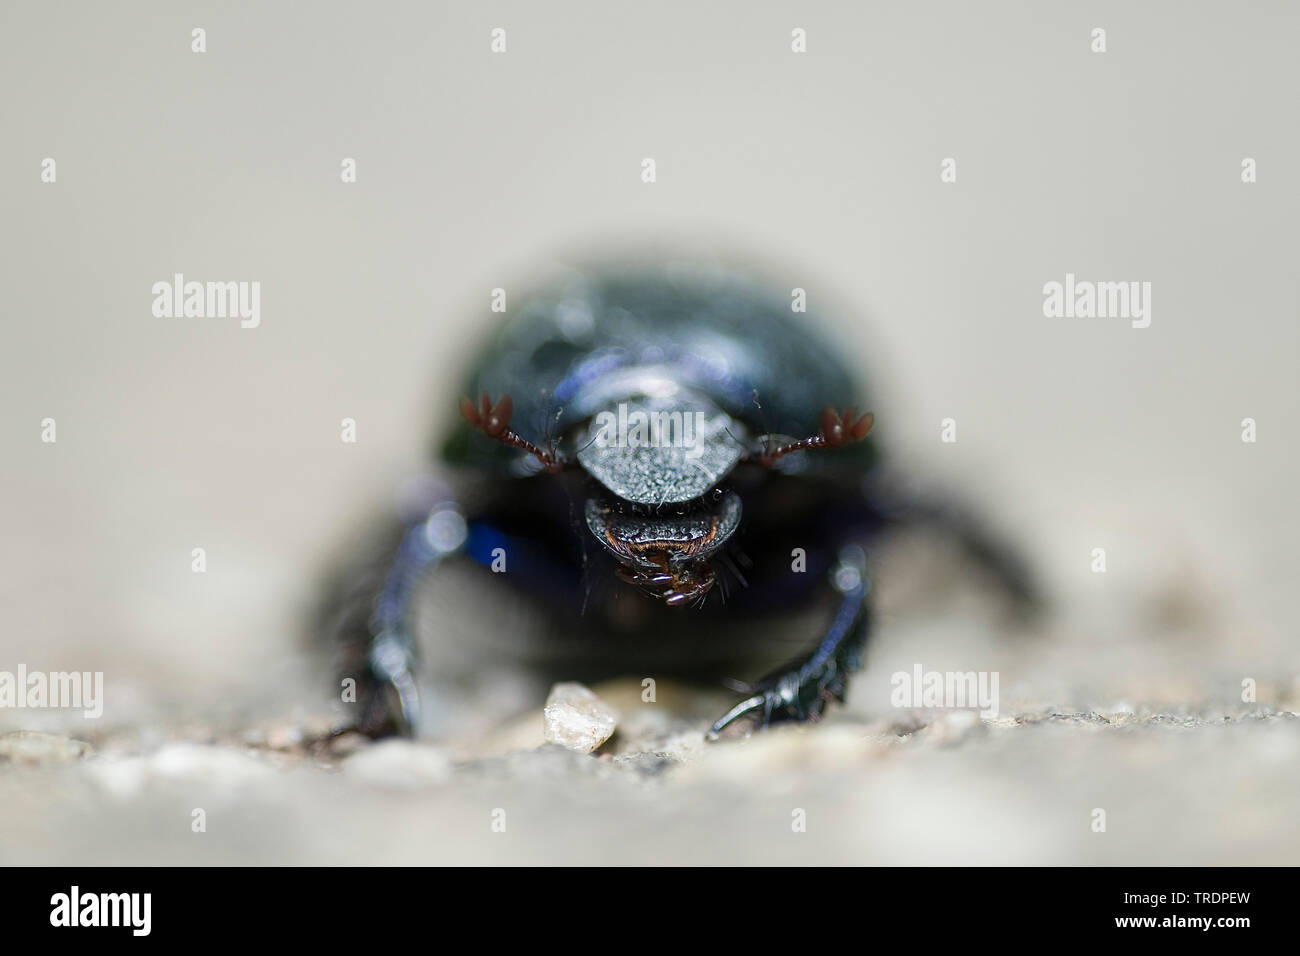 Les bousiers (Geotrupidae), gros plan de la tête d'un dun beetle, Hongrie Banque D'Images